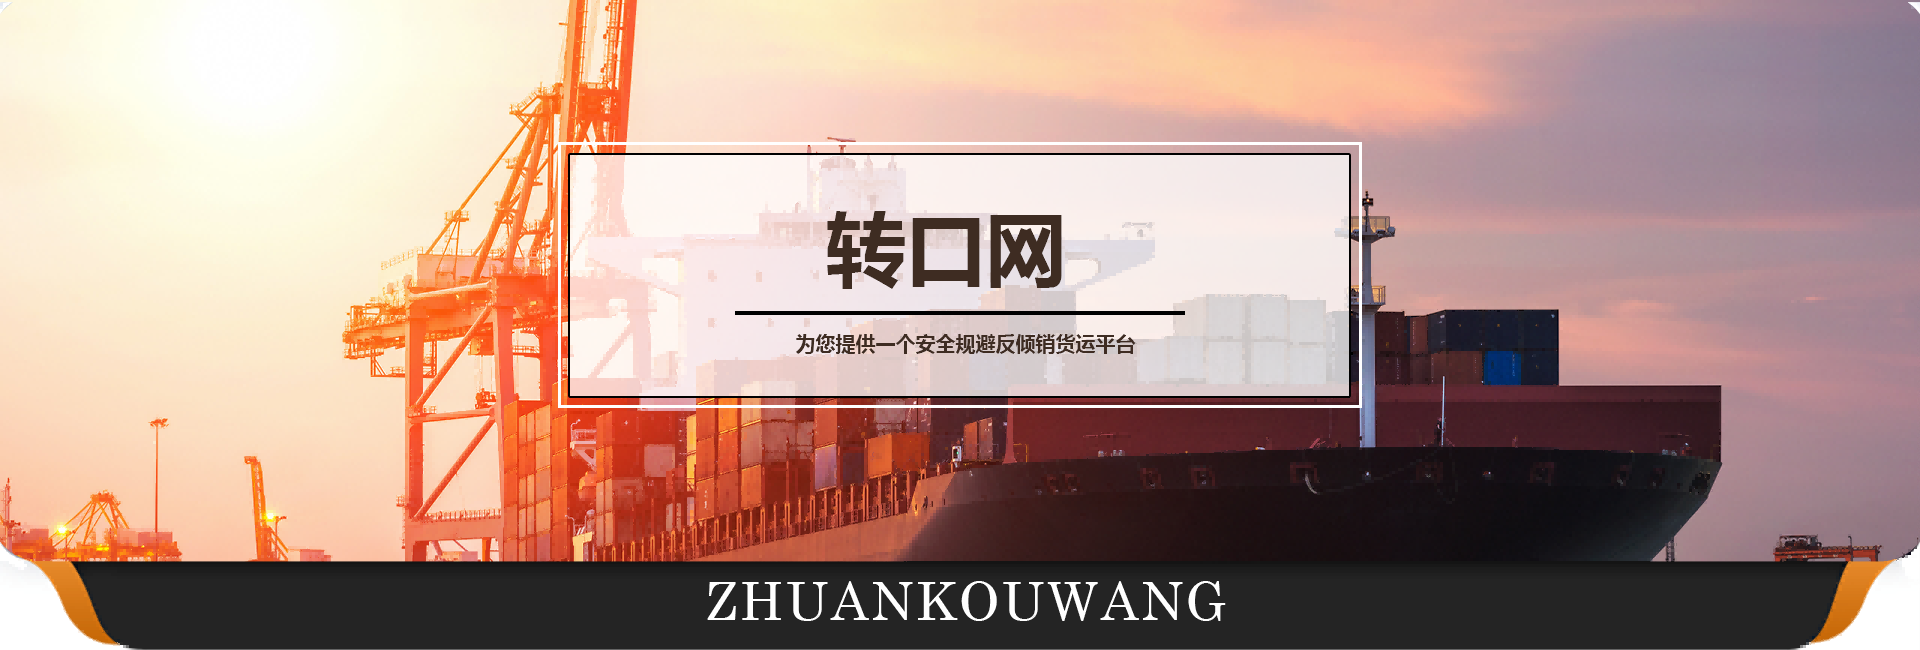 海运|转口贸易|第三国中转|第三国转口贸易操作流程